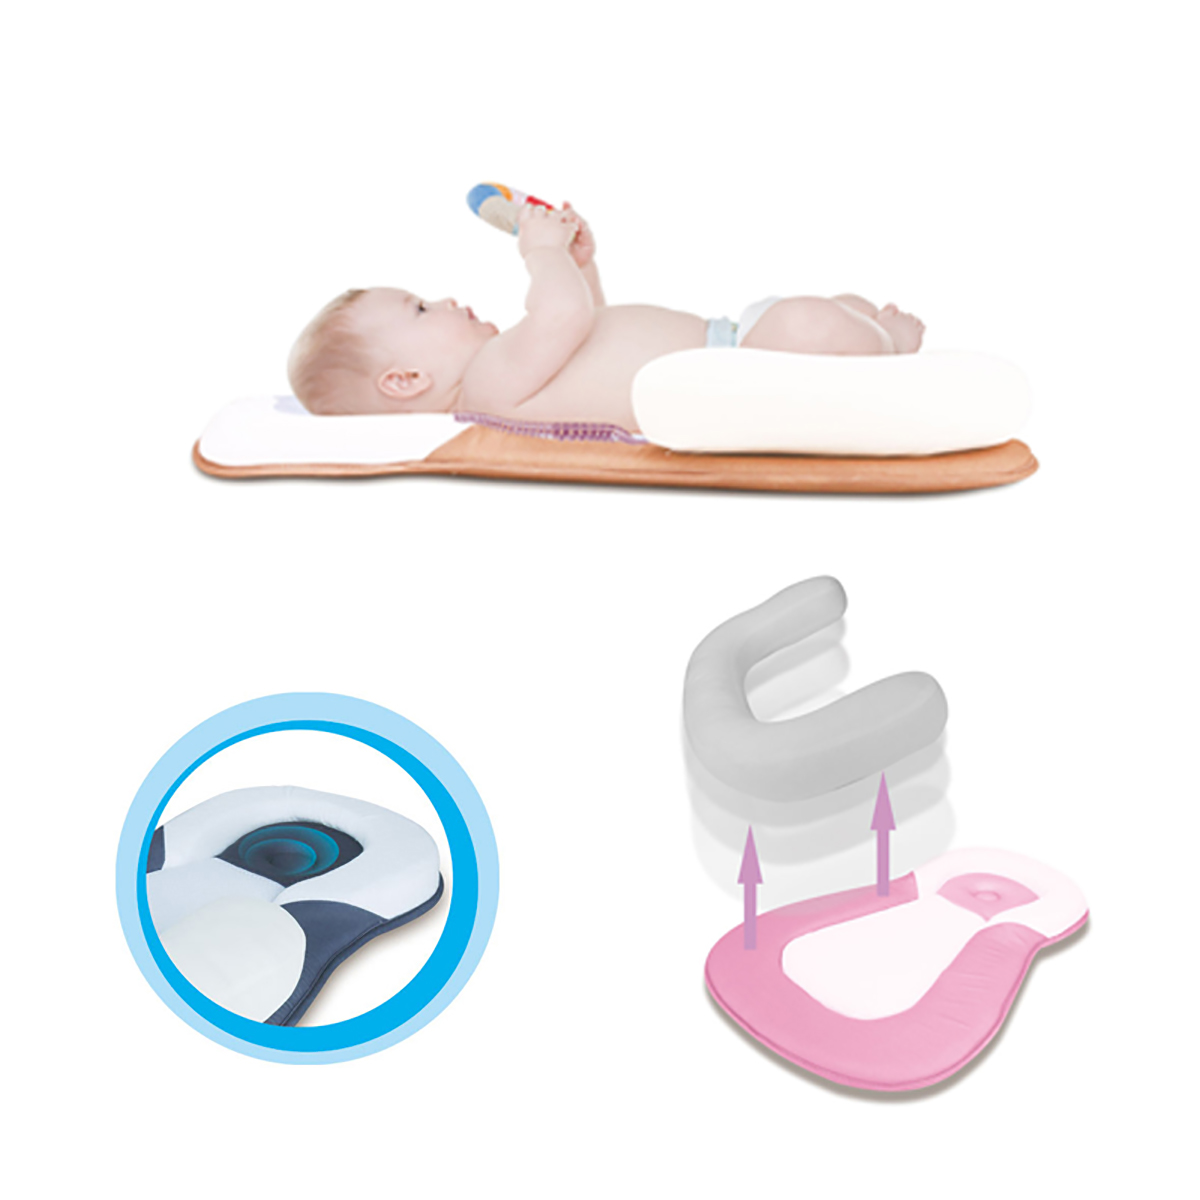 Pillow-Newborn-Baby-Infant-Sleep-Prevent-Flat-Head-Shape-Anti-Roll-Pillow-for-Newborn-Infant-Pillow-1809559-5